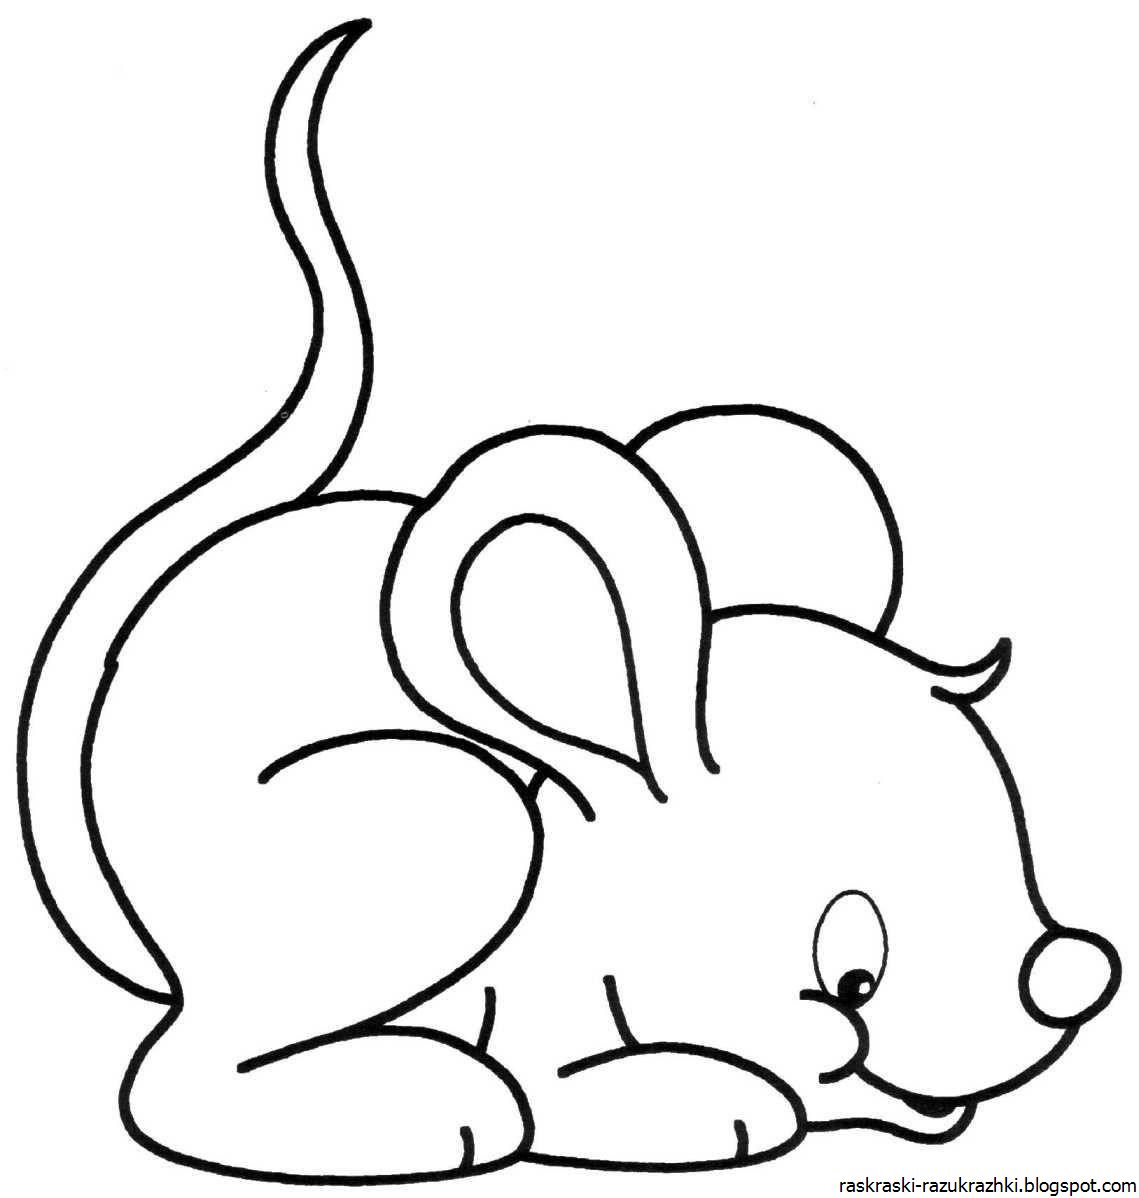 Раскраска мышь распечатать. Раскраска мышка. Мышь раскраска для детей. Мышка раскраска для детей. Мышонок раскраска для детей.